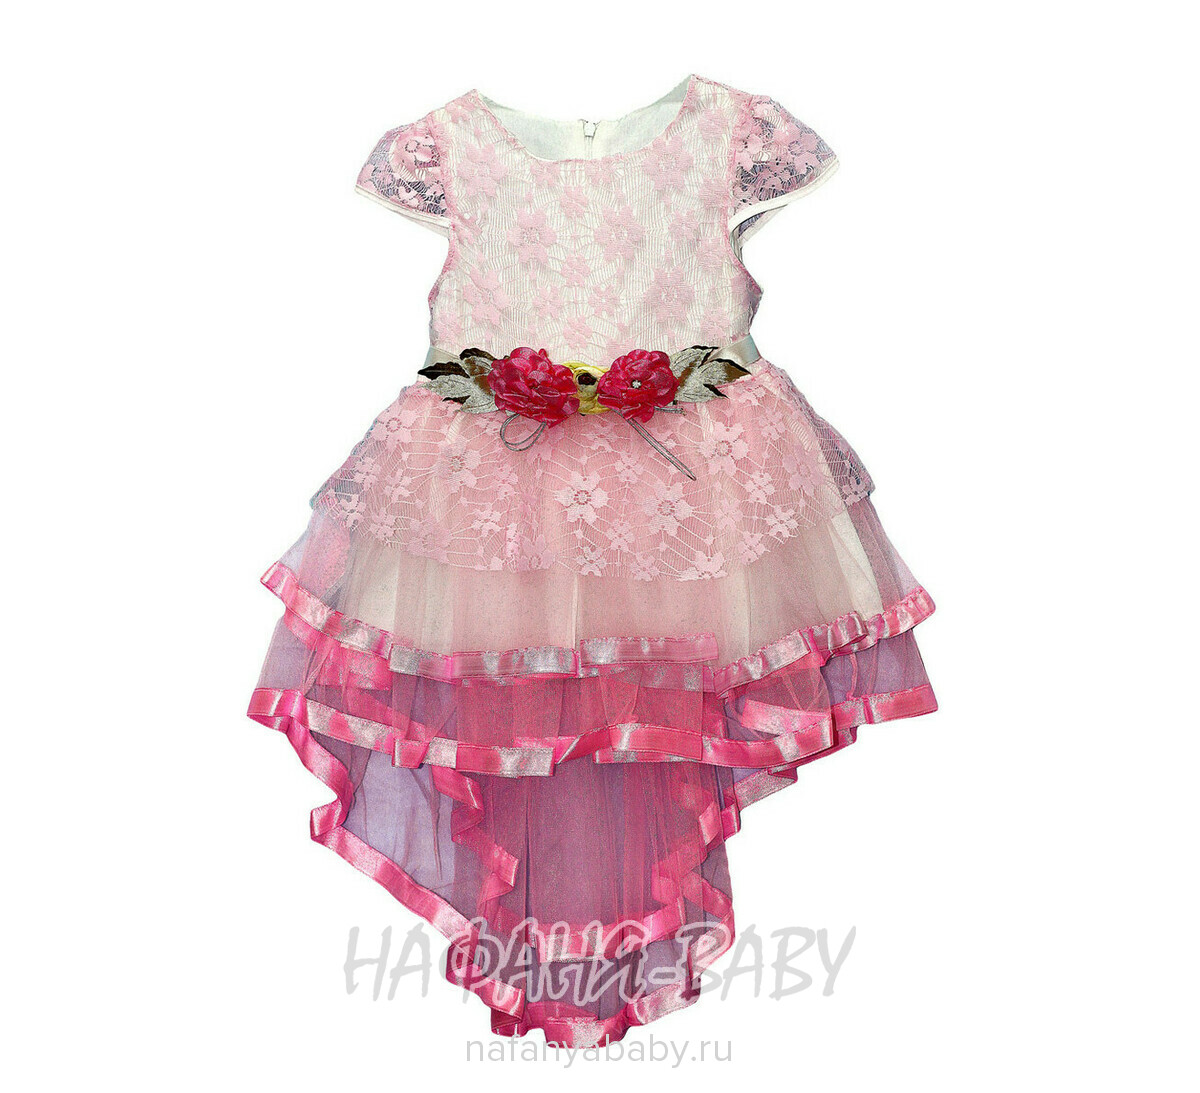 Детское нарядное платье Miss GOLDEN, купить в интернет магазине Нафаня. арт: 2115.